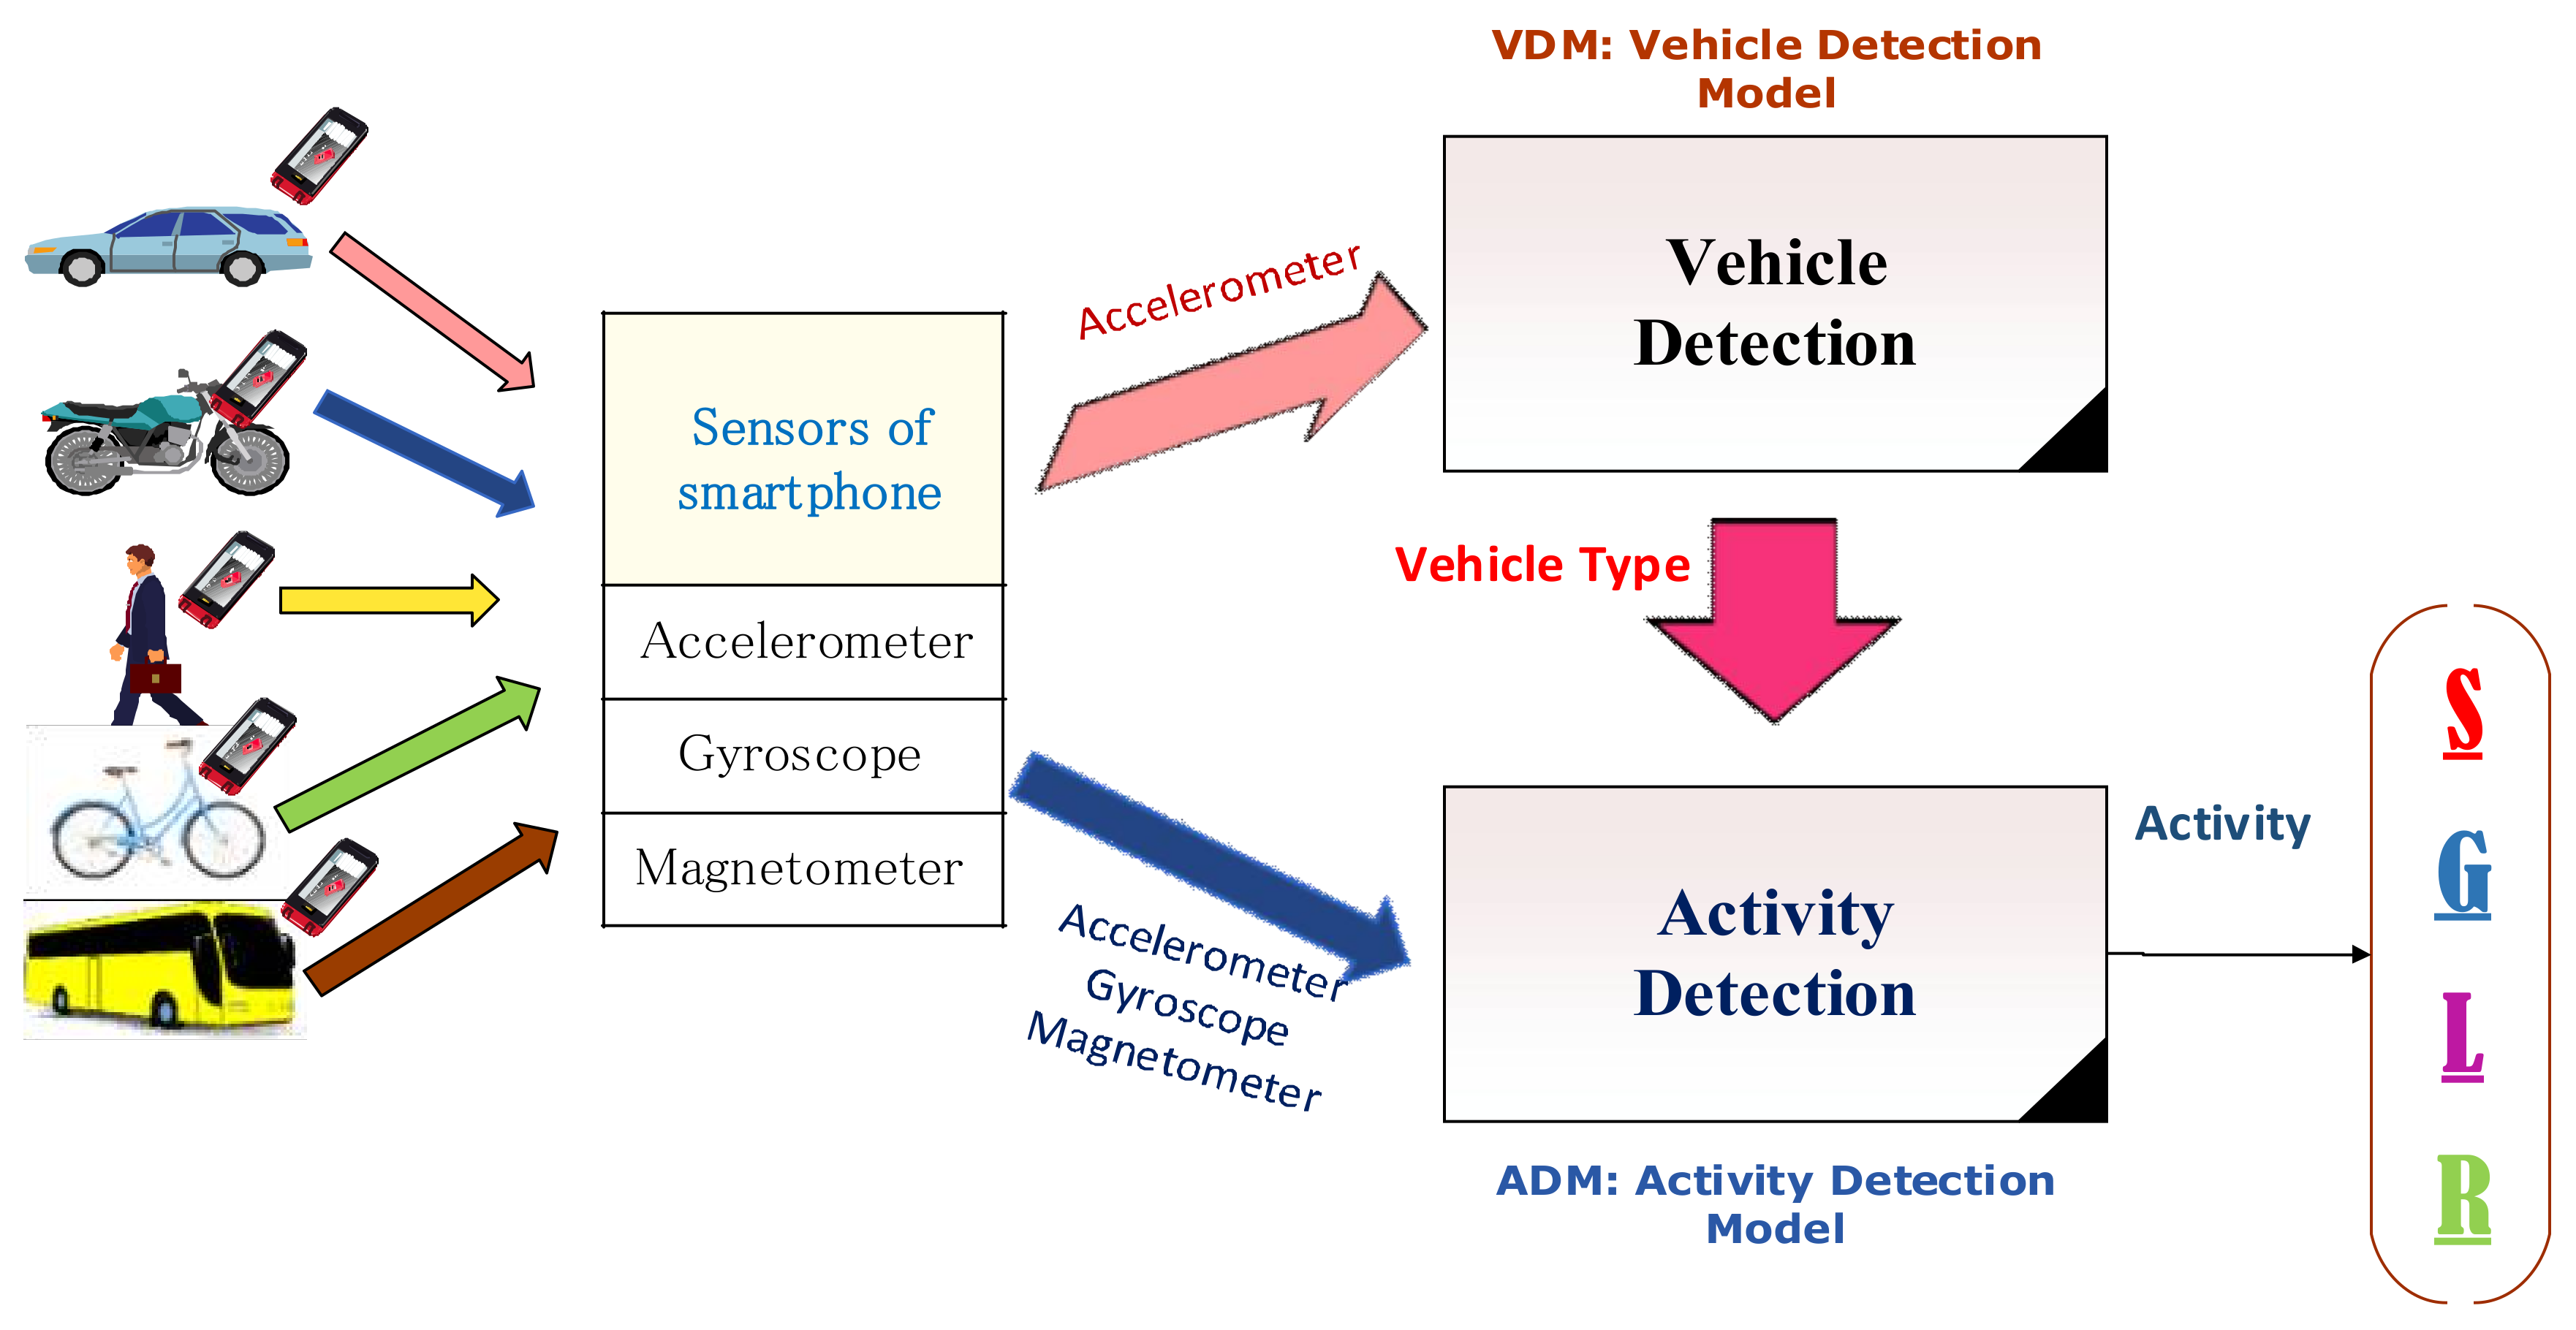 Detect activity